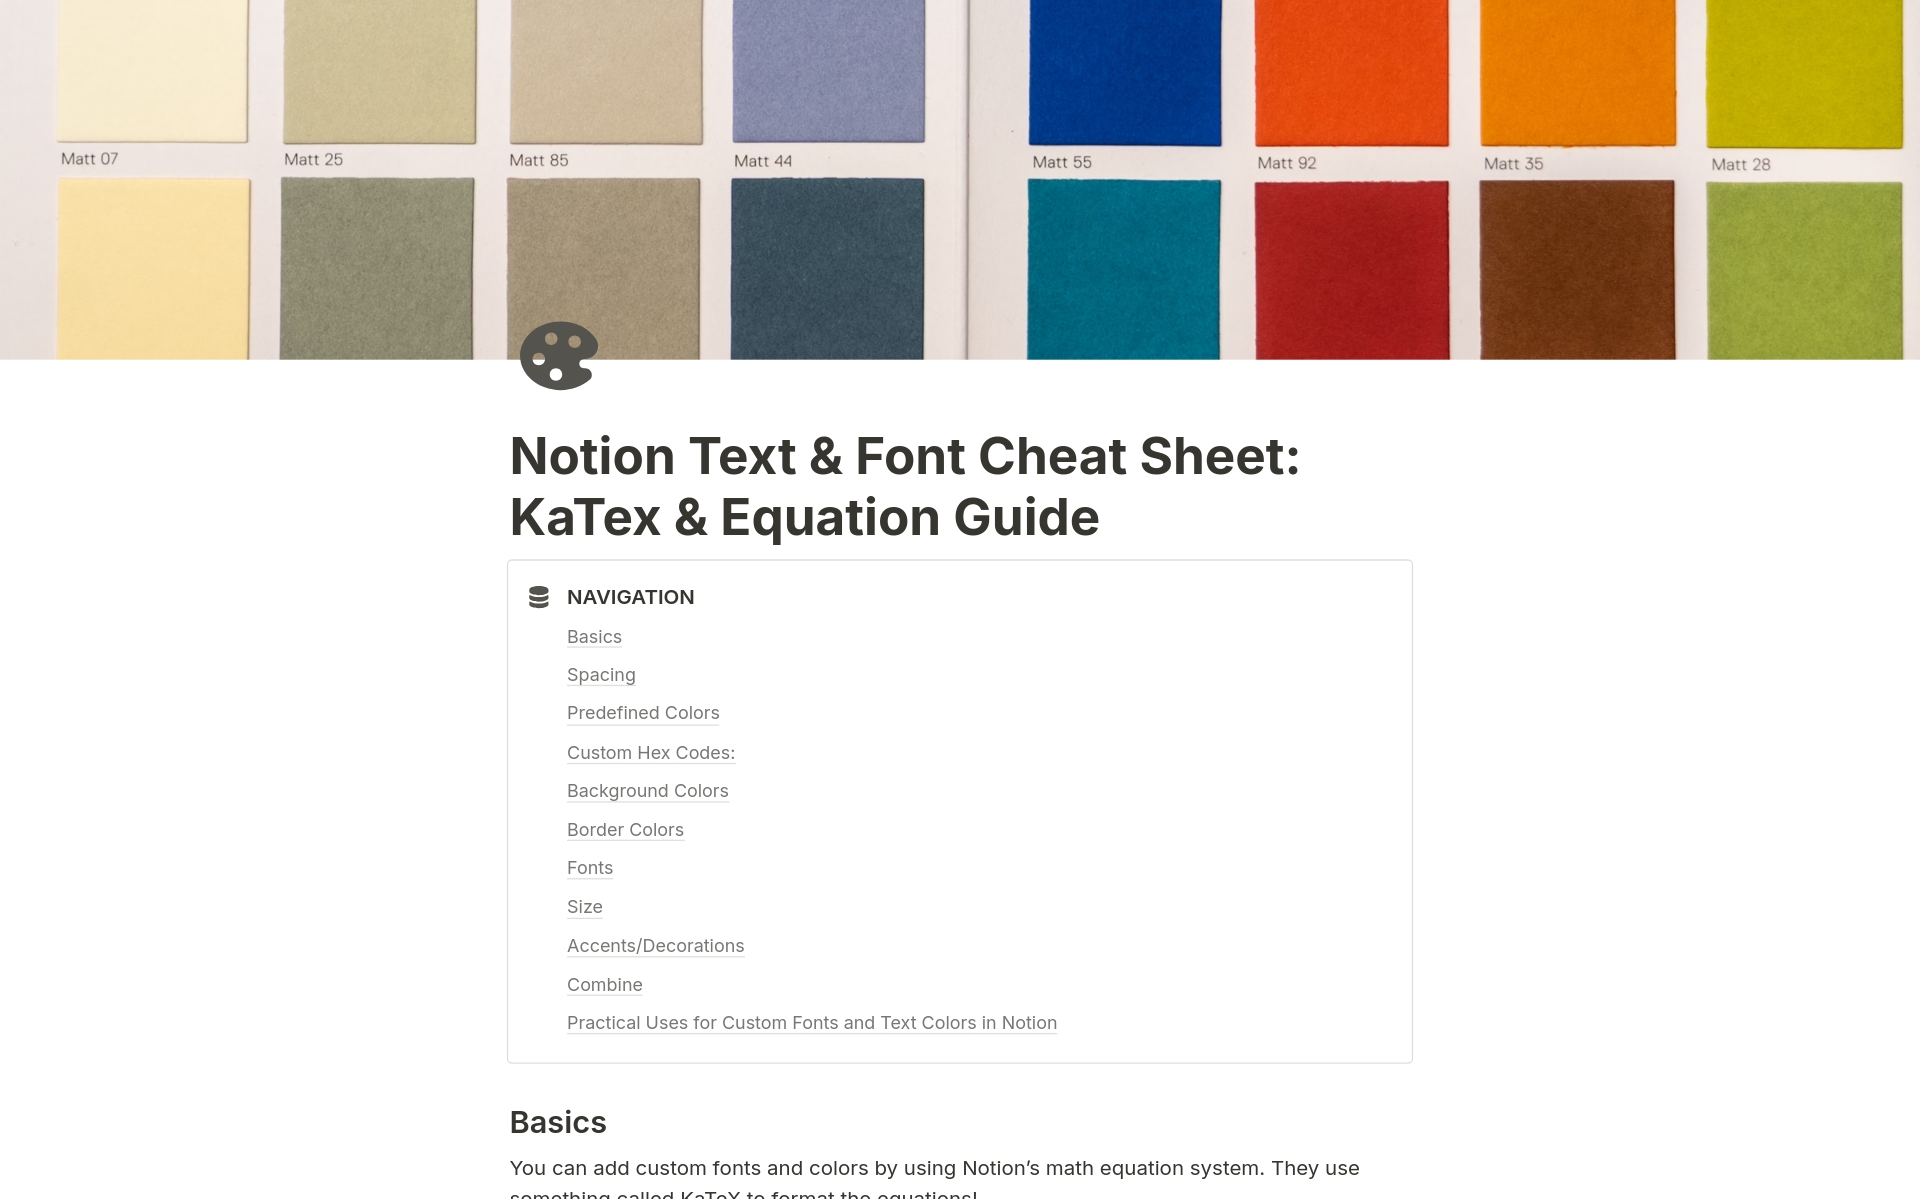 Vista previa de plantilla para Text & Font Cheat Sheet using KaTex